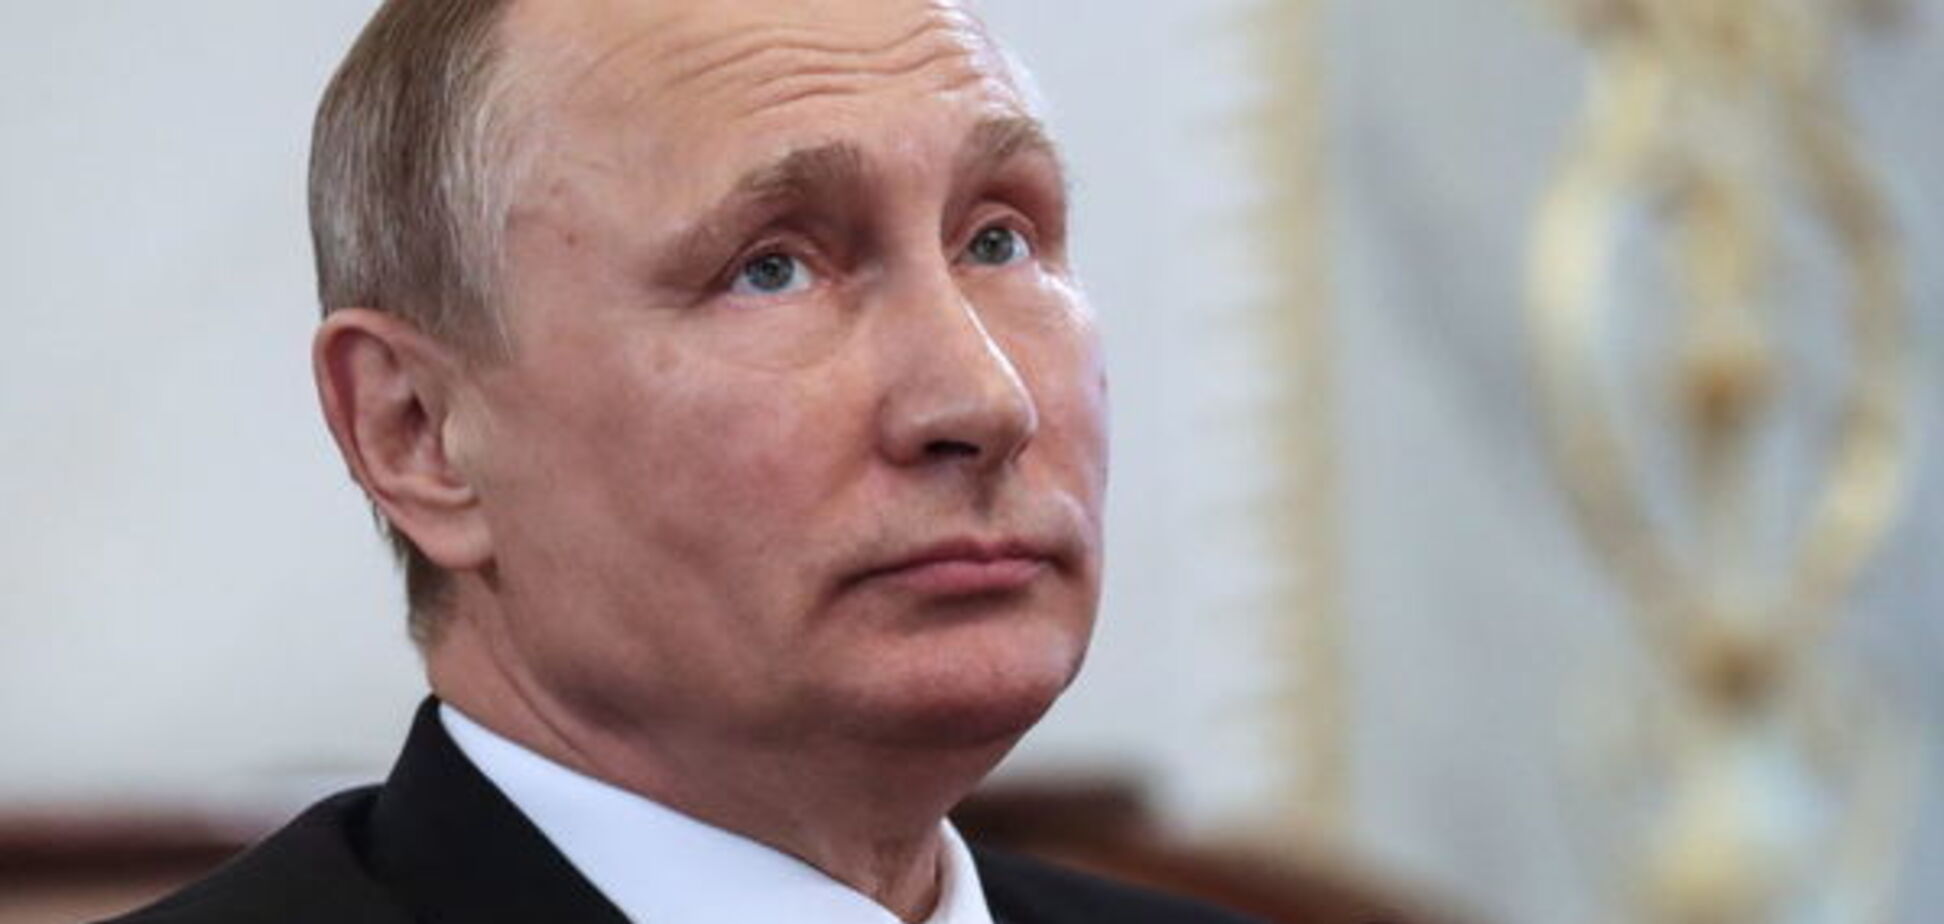 Годовщина захвата Крыма: у Путина сделали циничное заявление 